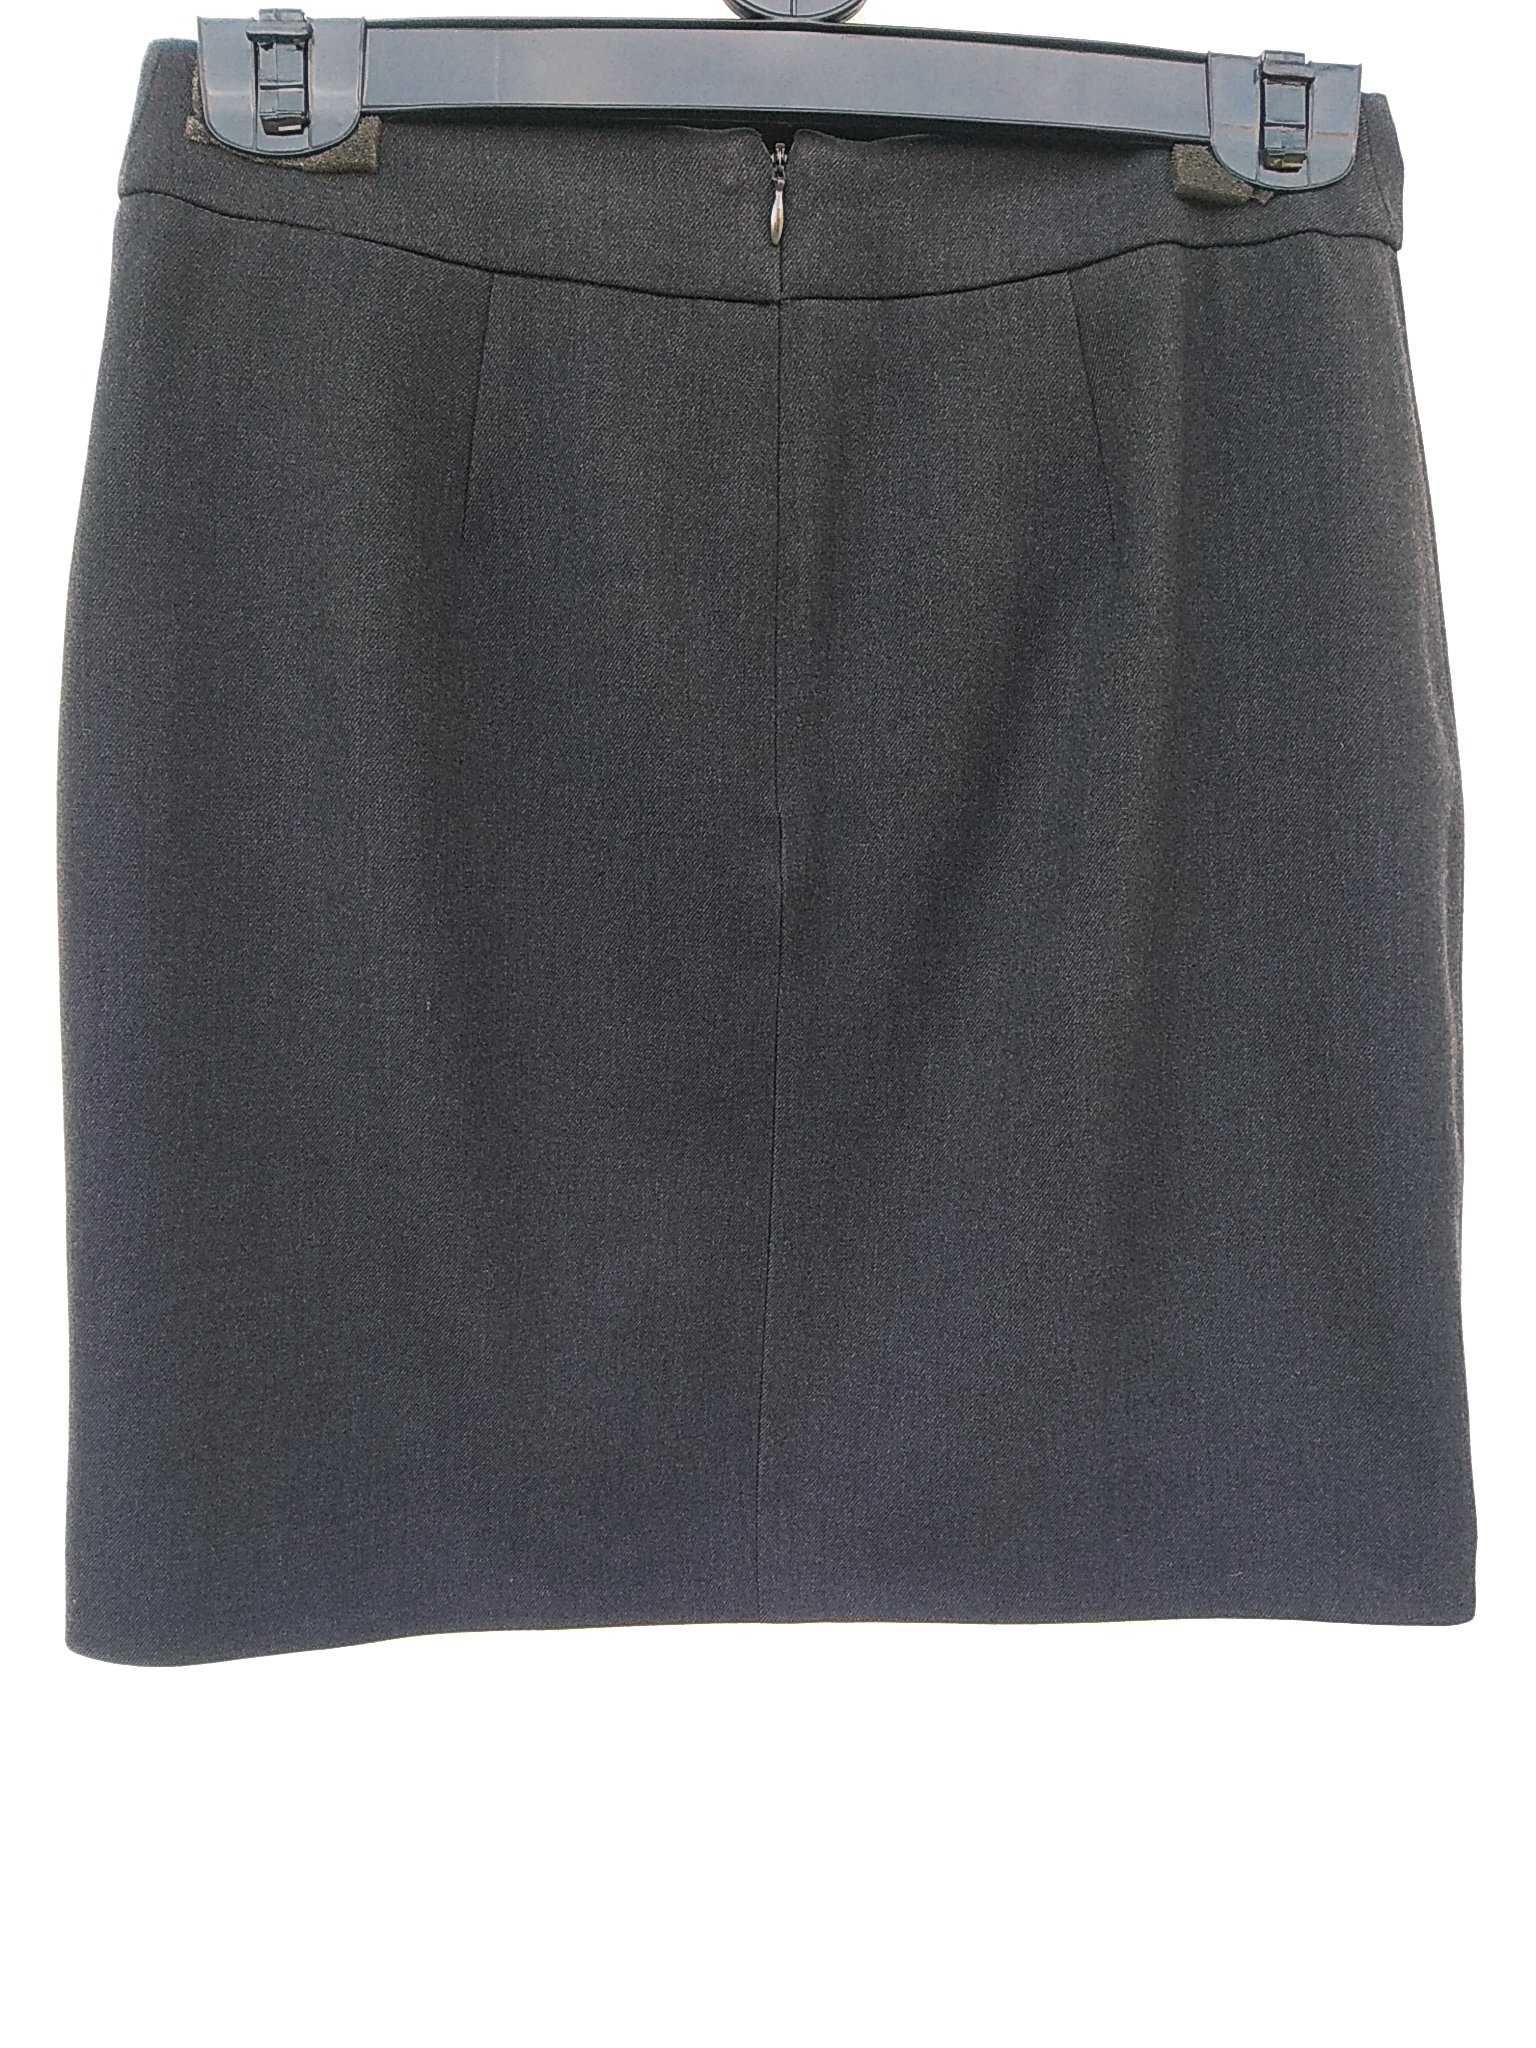 стильные юбки трапеция для офиса/учёбы цвет: черн./антрацит 36 (S)